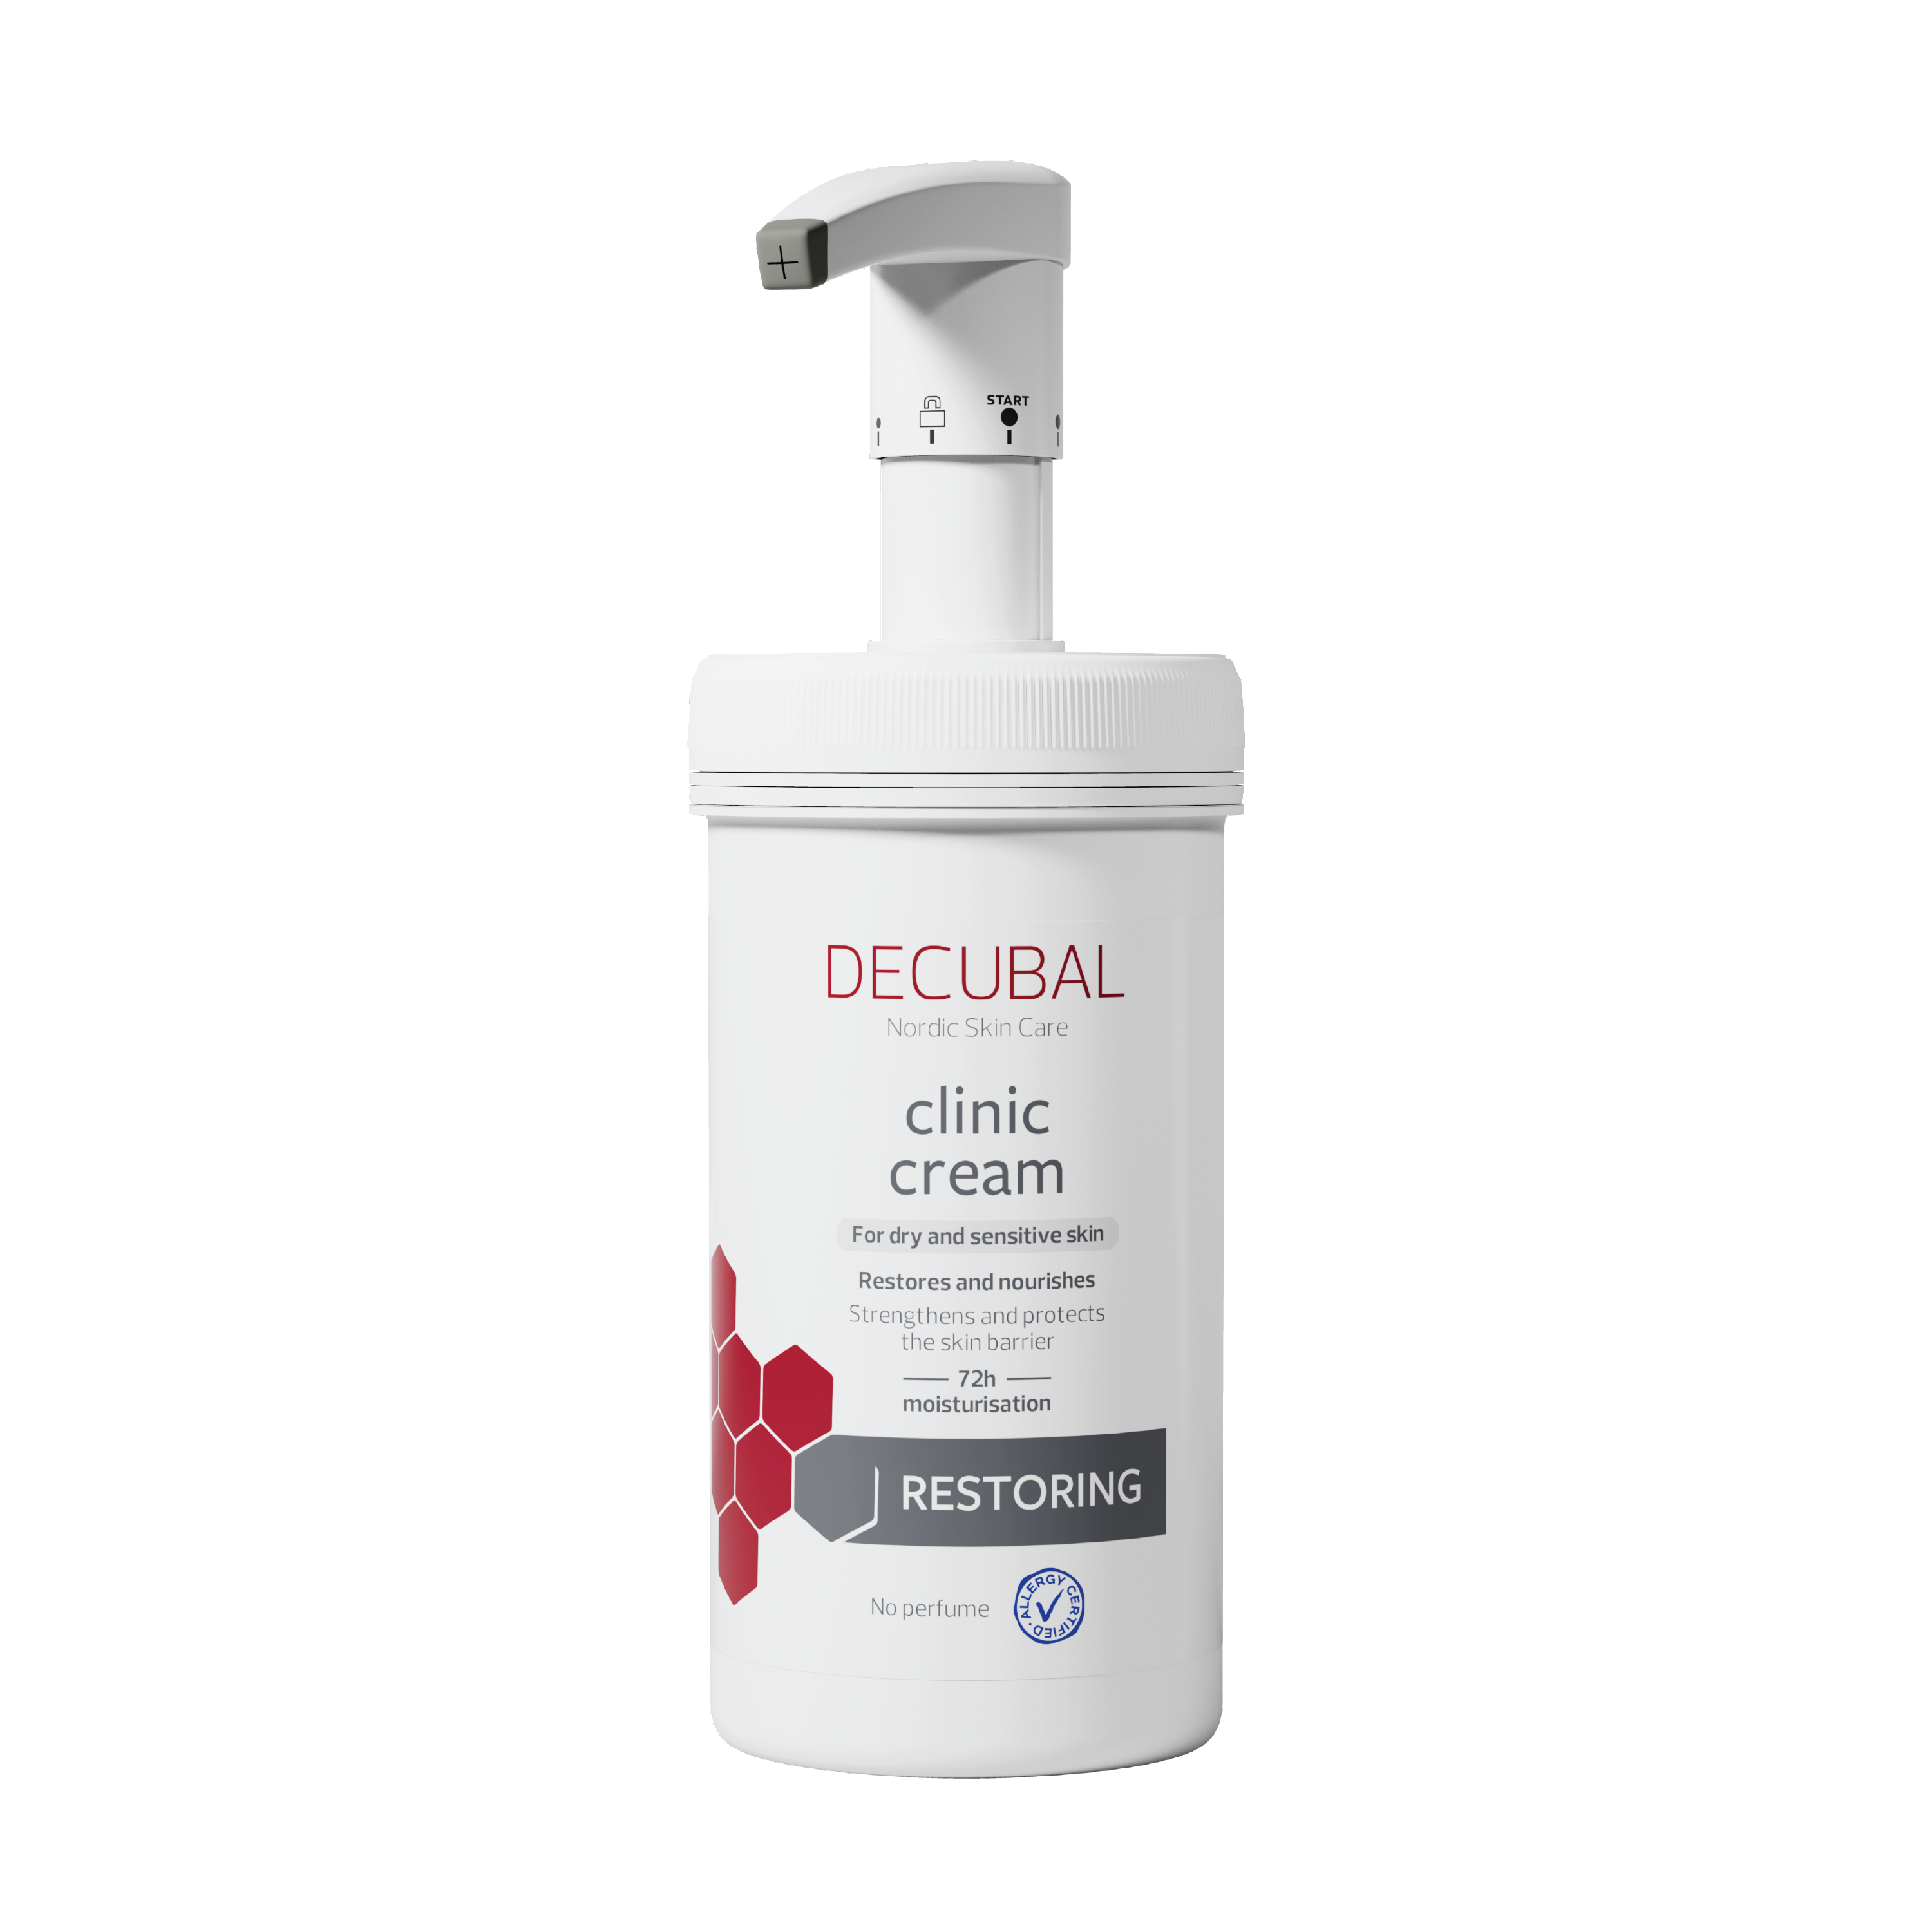 Decubal Clinic Cream, 475 g